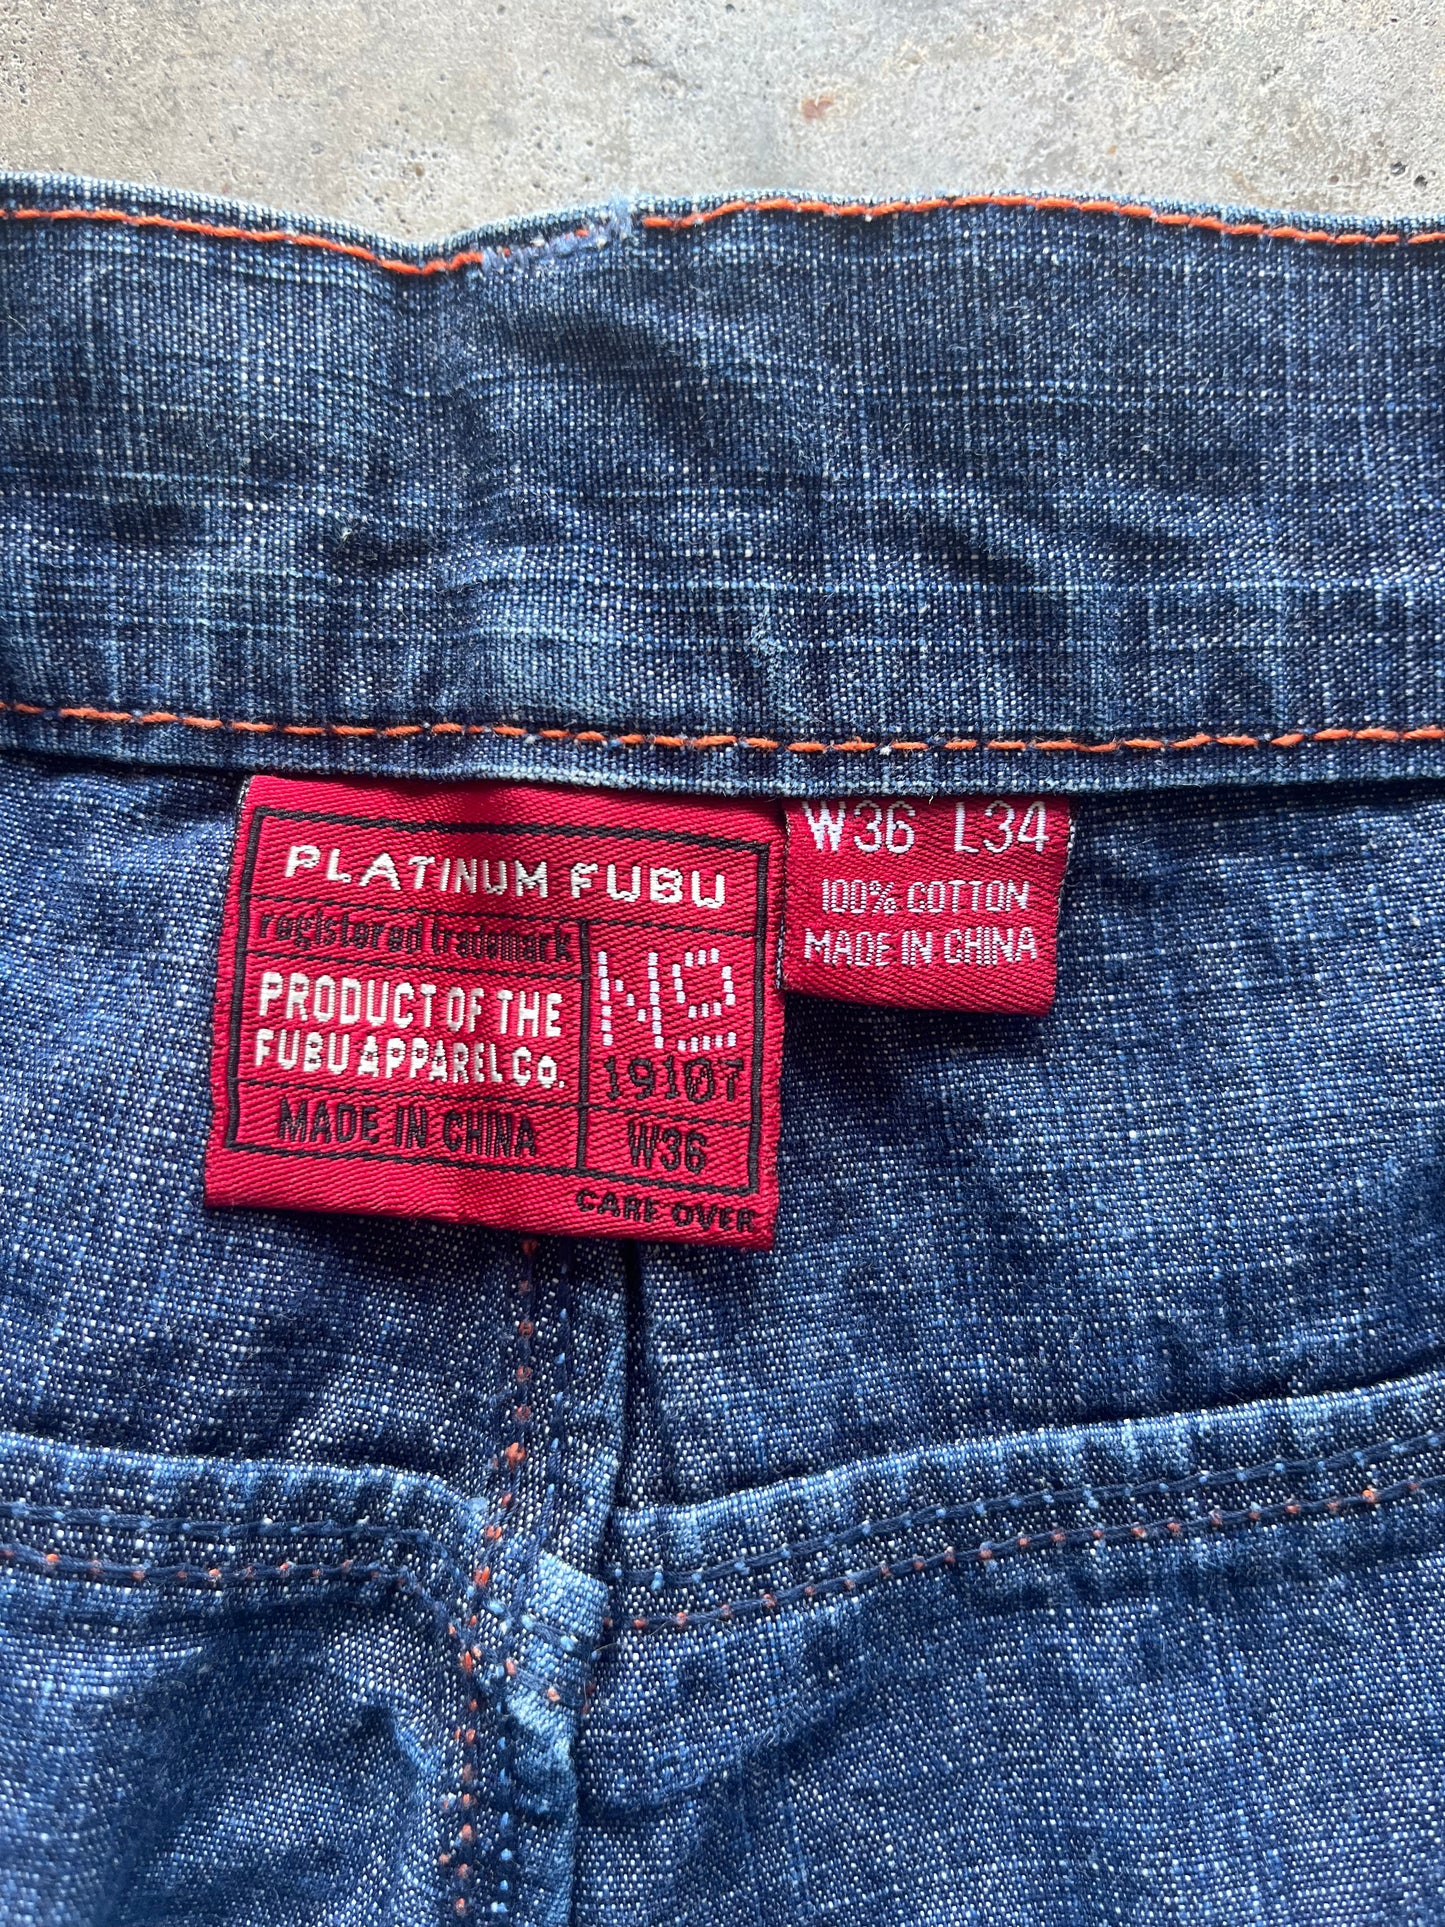 (36 x 34) Platinum Fubu Denim Jeans